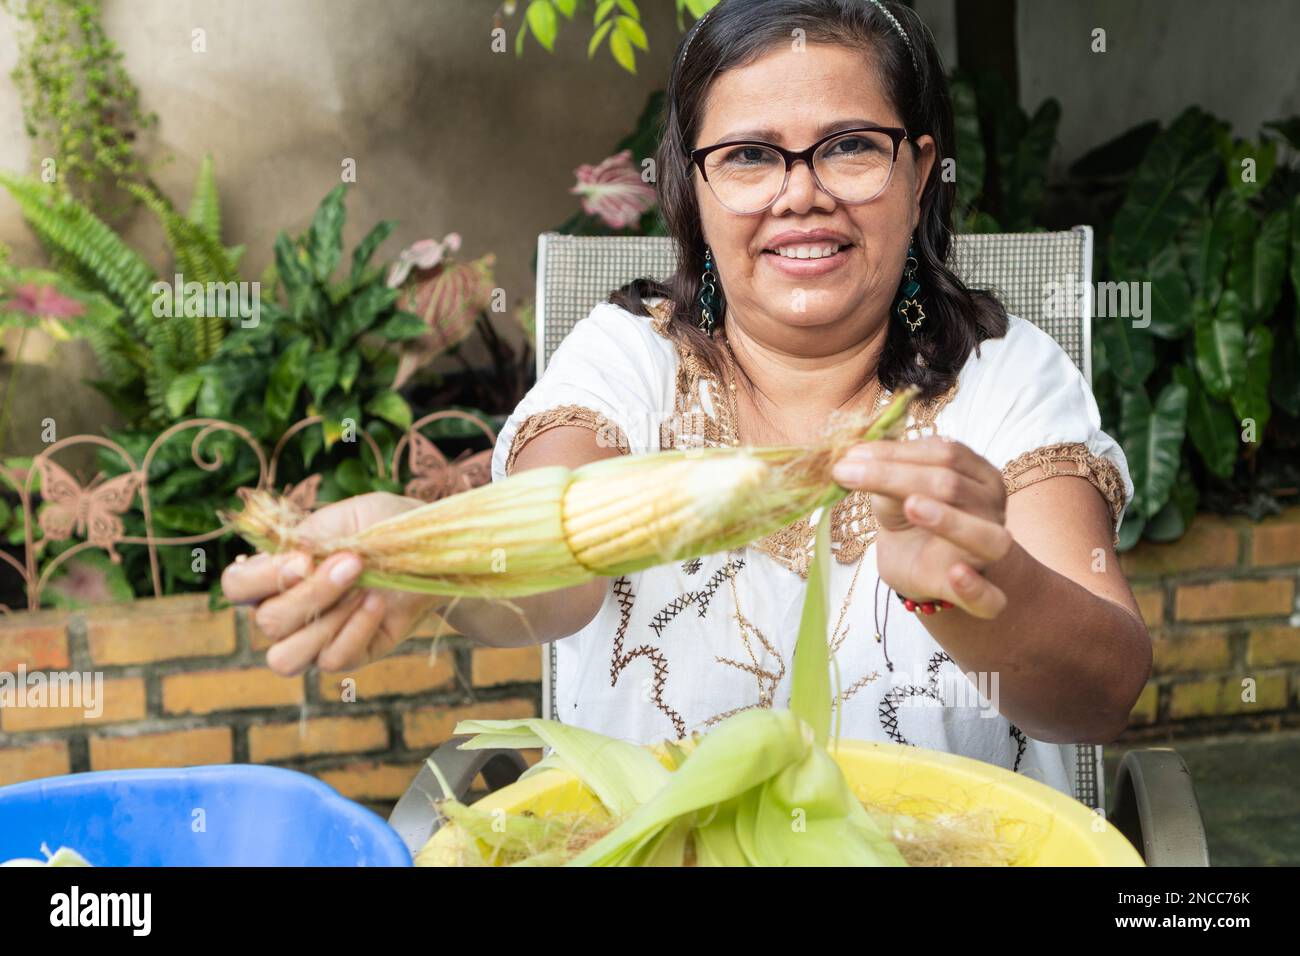 Eine einheimische mexikanische Frau, die Mais schält, um Teig für Tortillas, ein typisches mexikanisches Essen, herzustellen. Stockfoto